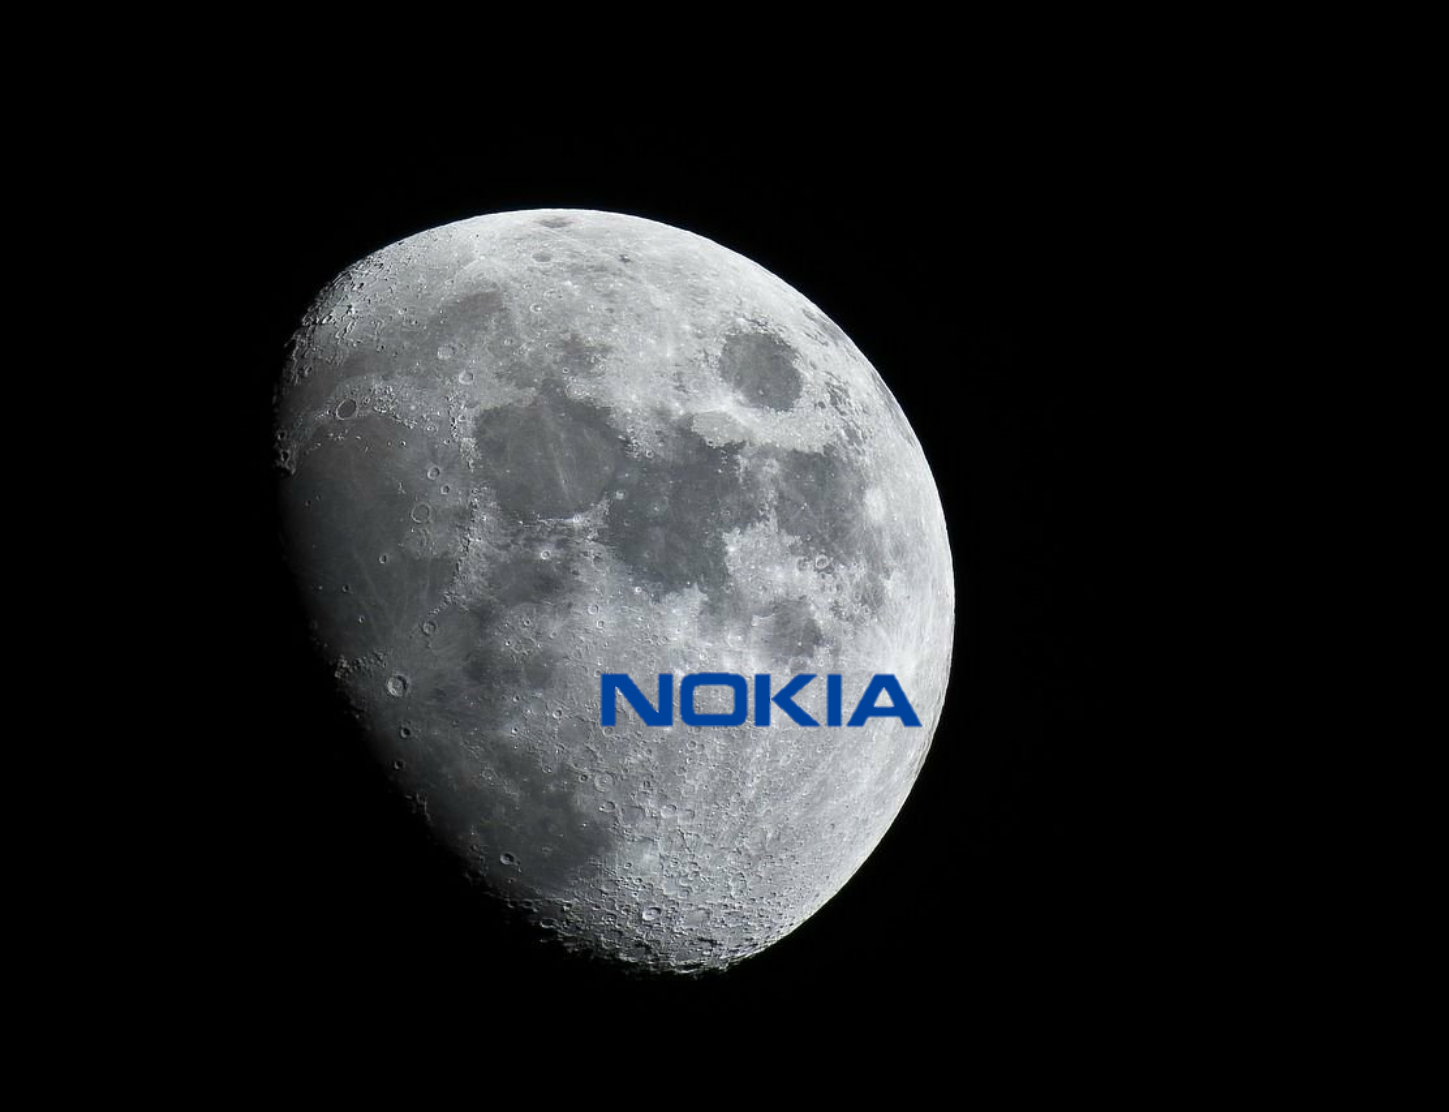  La Luna Tendrá Red Móvil 4G y Nokia Lo Instalara